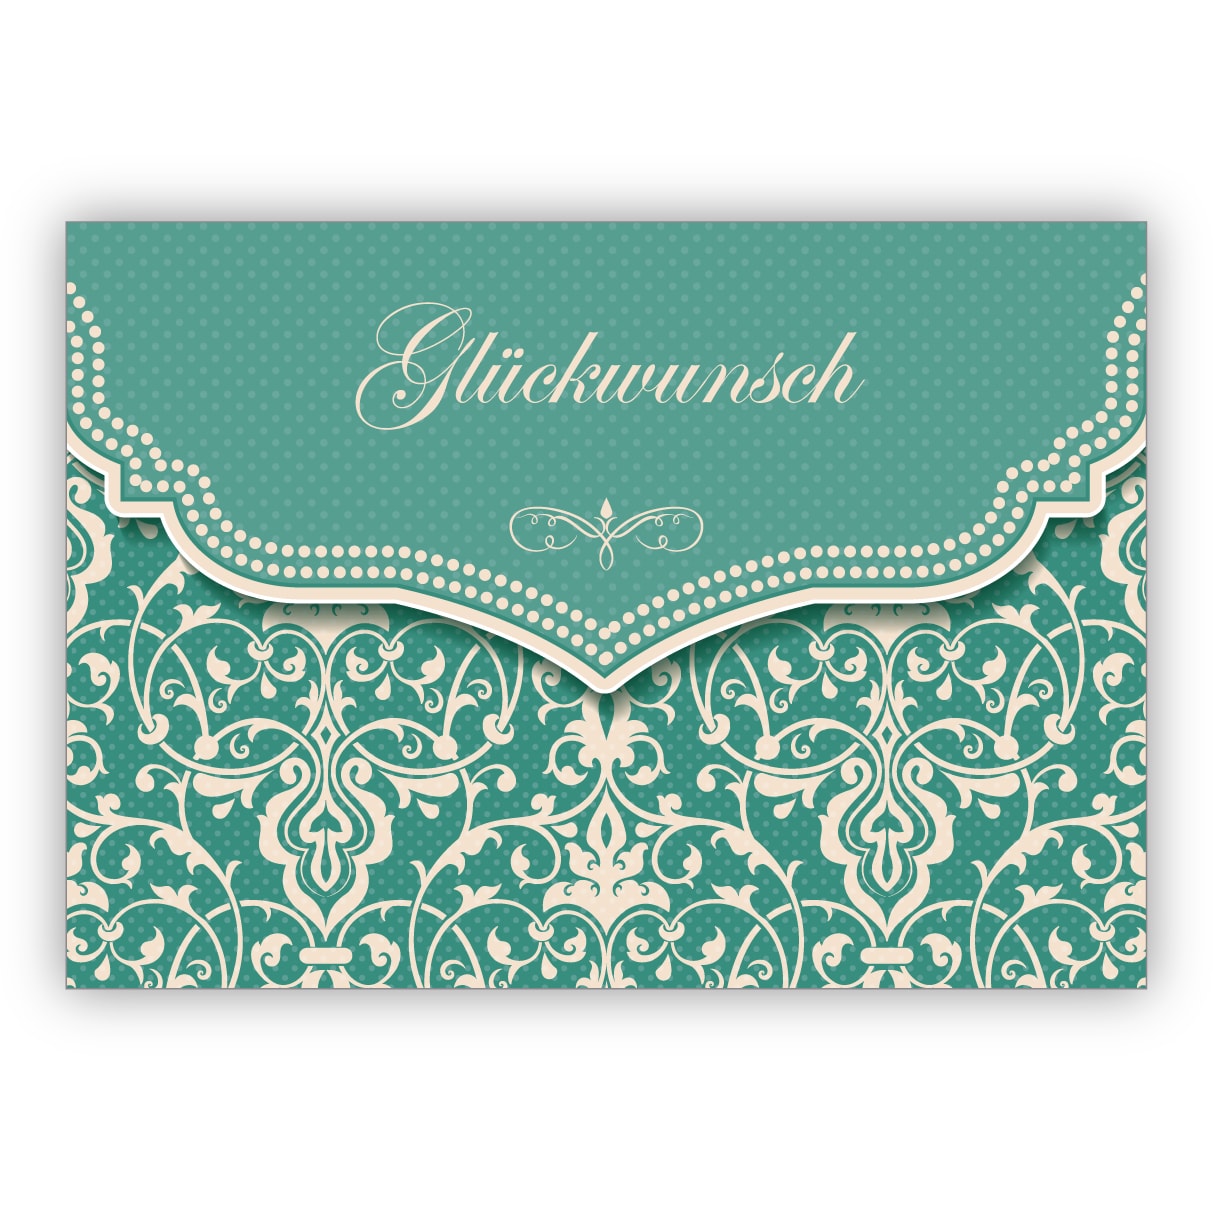 Schöne Glückwunschkarte mit Vintage Damast Muster in edlem Hellblau türkis zur Hochzeit, Taufe, Geburt, Examen etc: Glückwunsch